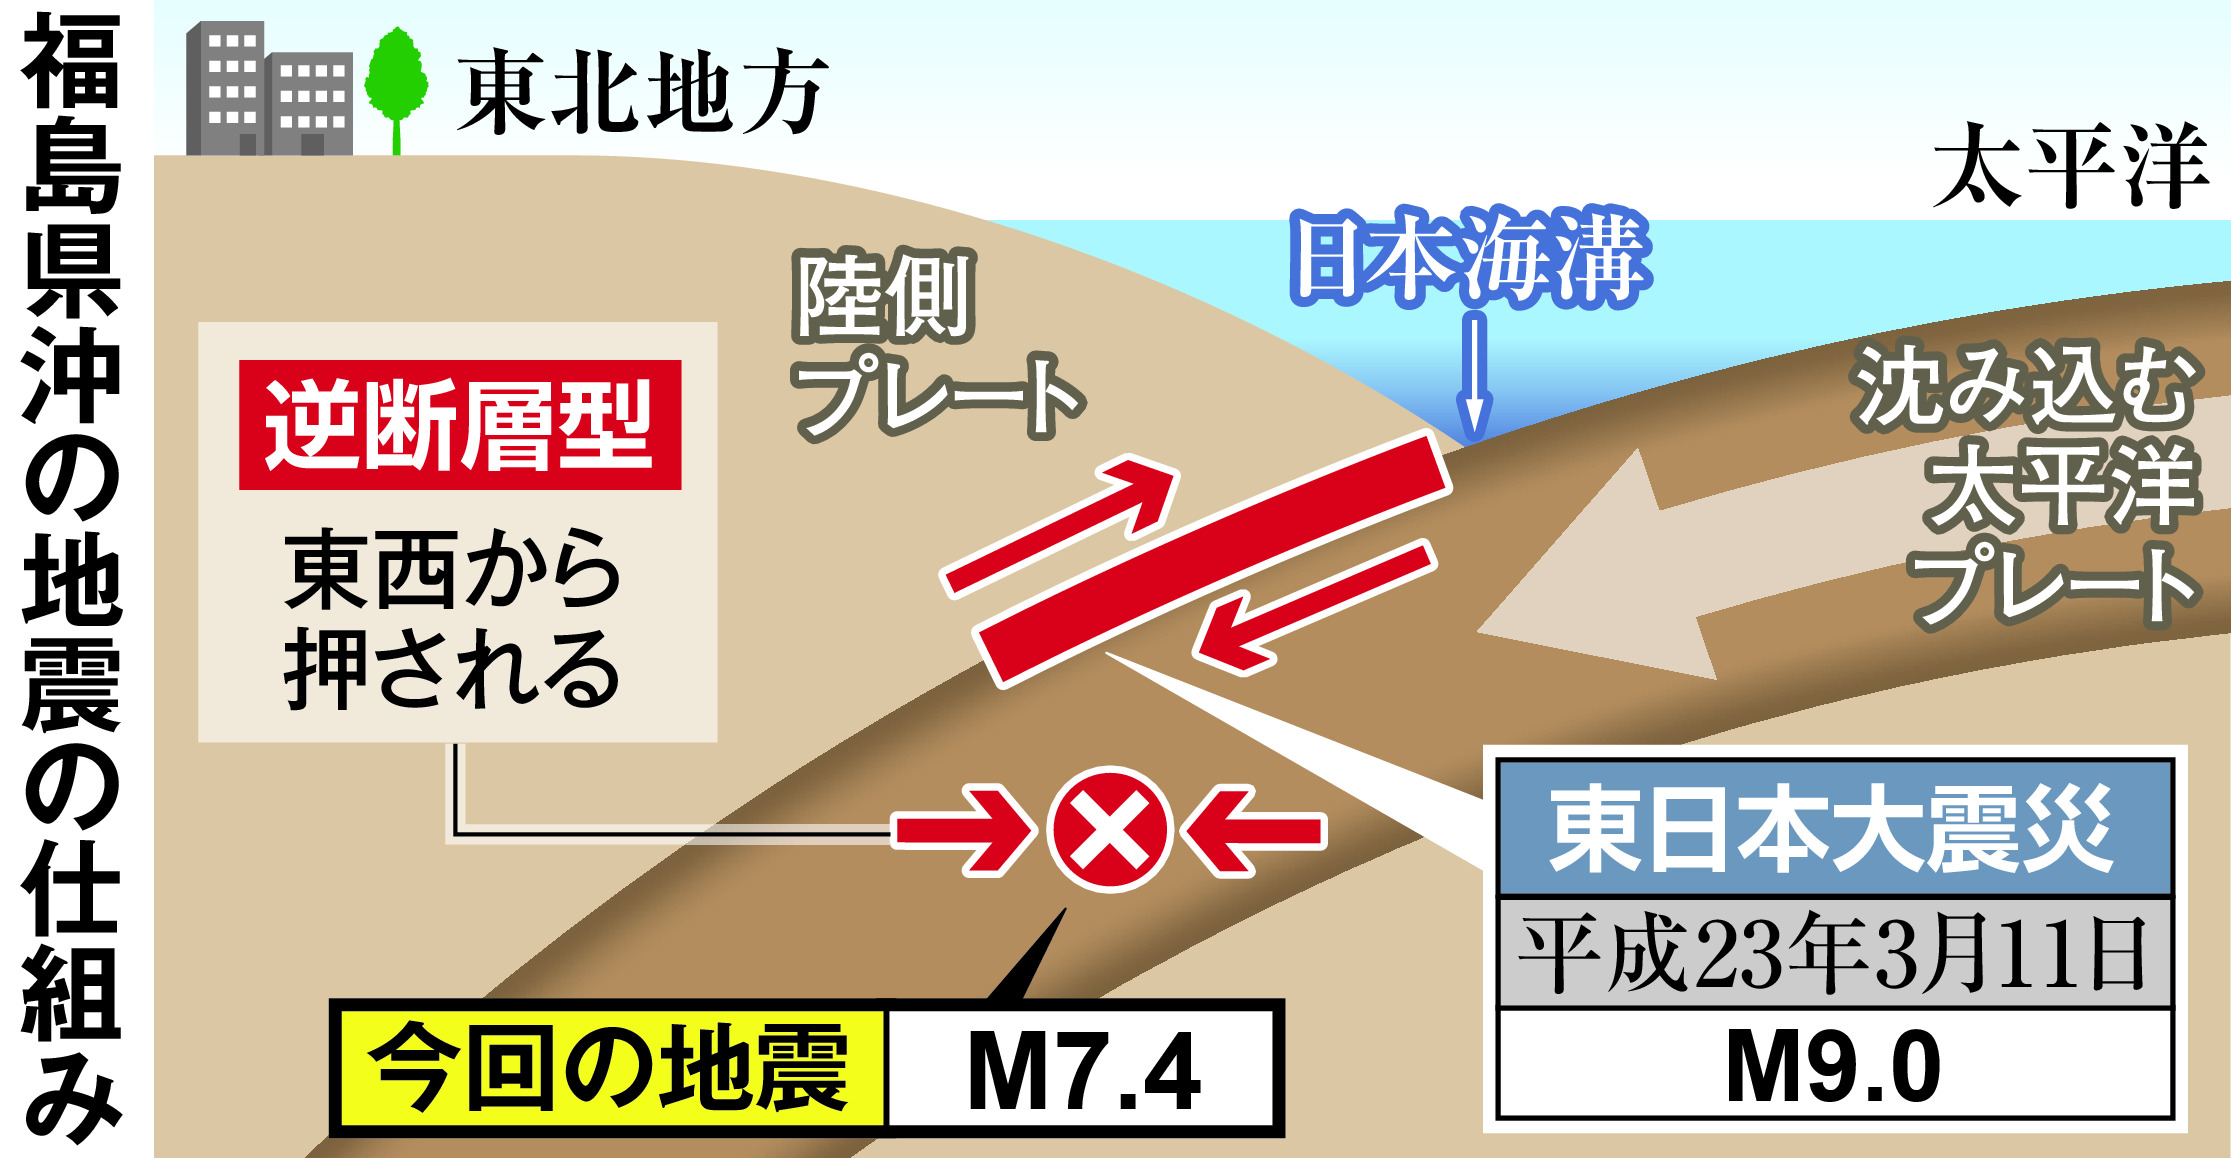 東日本大震災と別タイプ 太平洋プレート内の逆断層型 - 産経ニュース